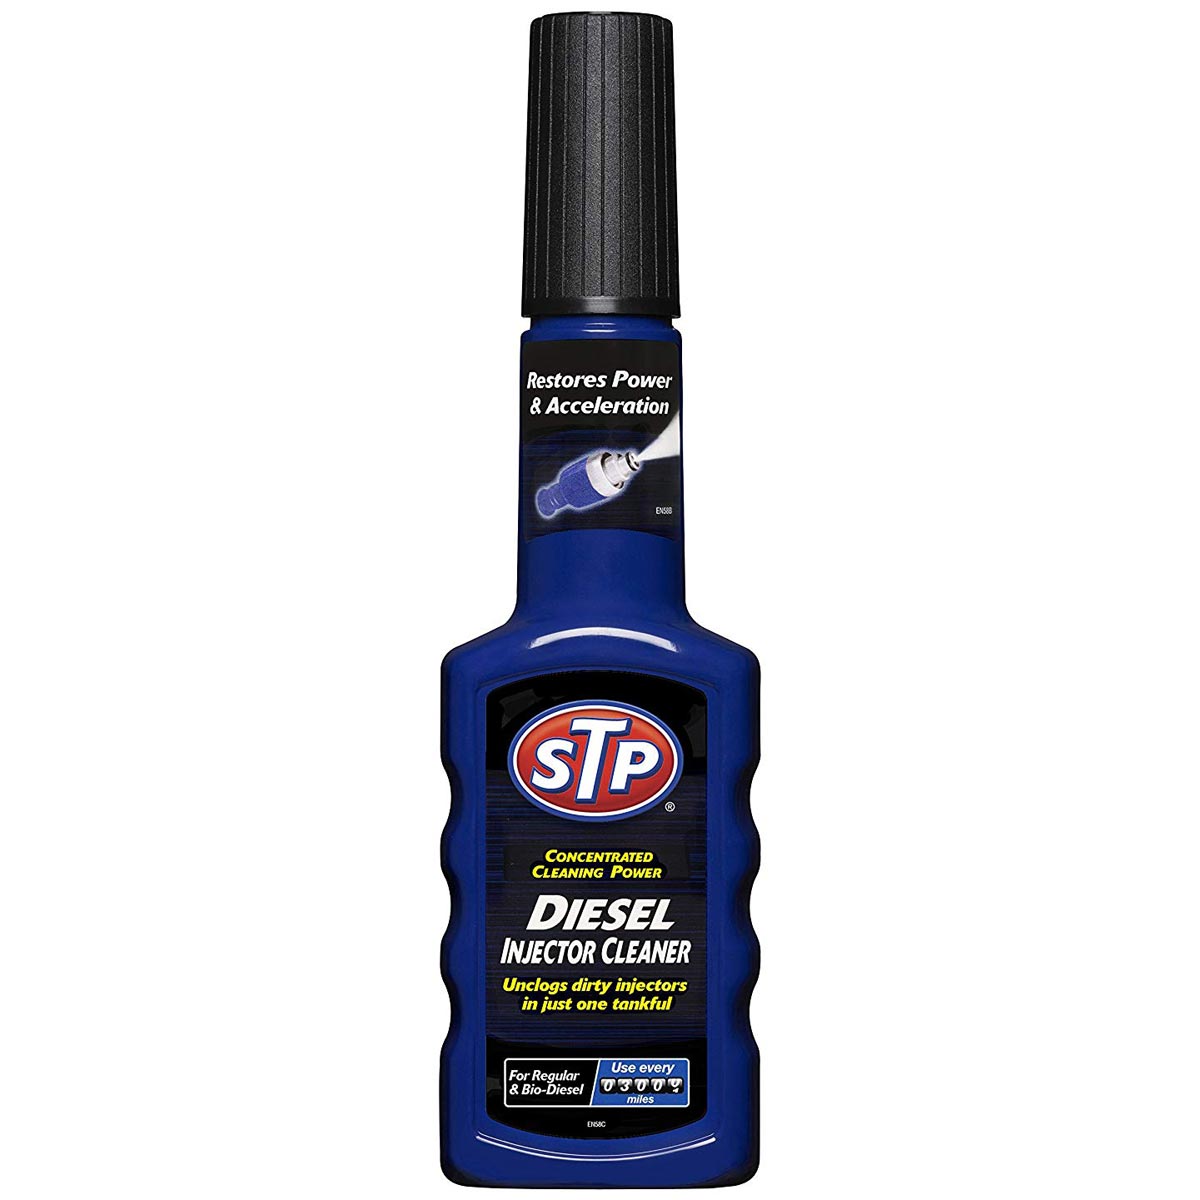 STP Diesel Injector Cleaner & Restorer 3000 Miles - 200ml